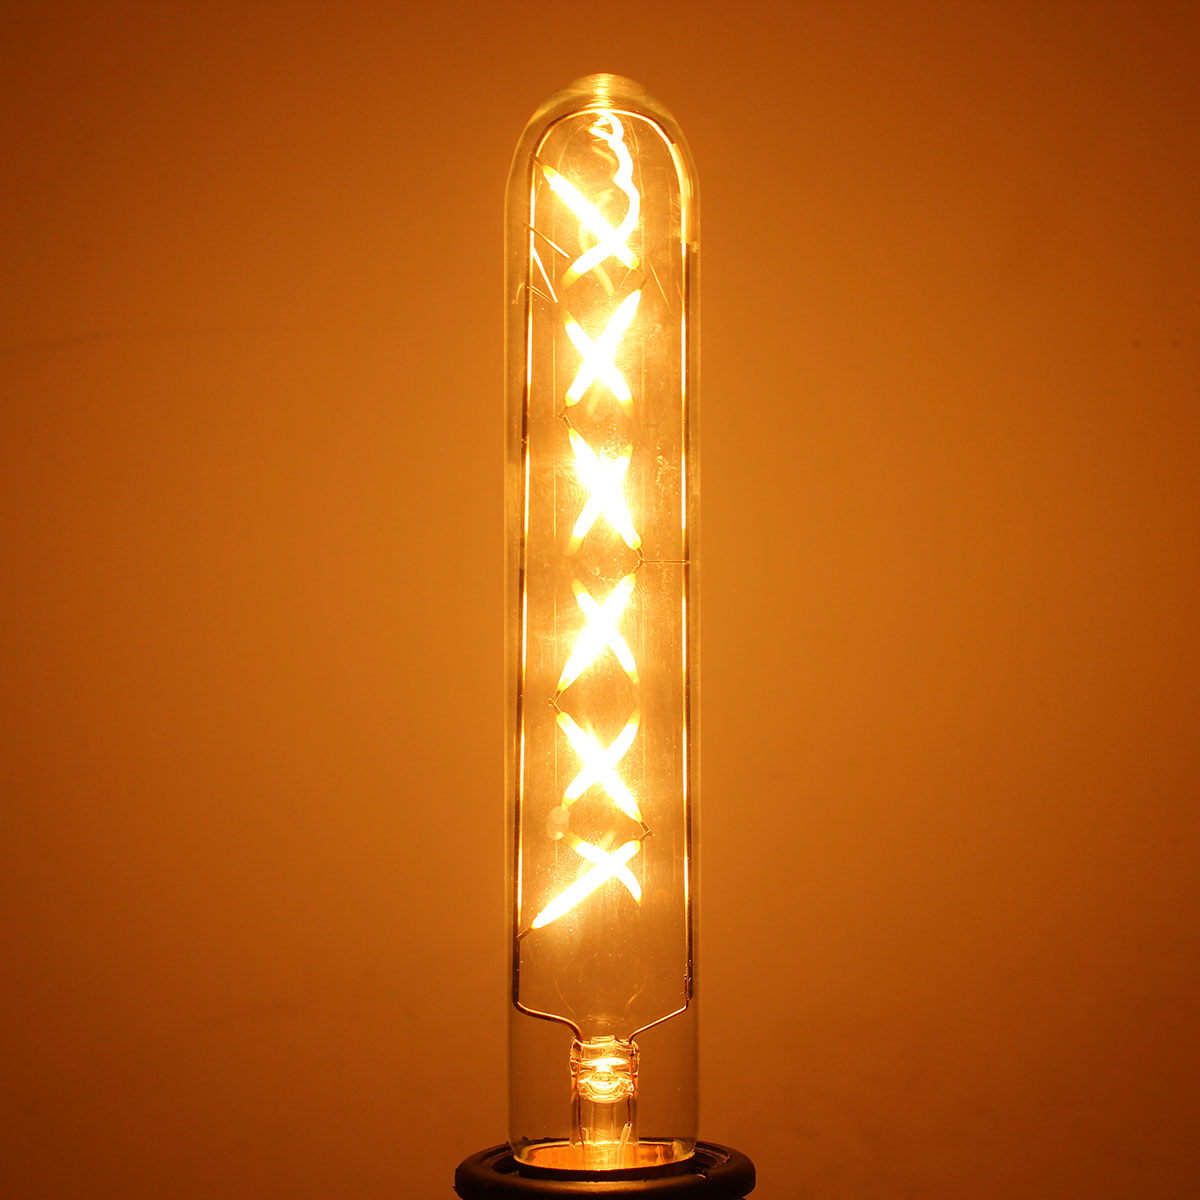 Dimmable-E26-E27-6W-Retro-LED-COB-Filament-Bulb-Tubular-Style-Light-Lamp-Bulb-AC110V--220V-1055034